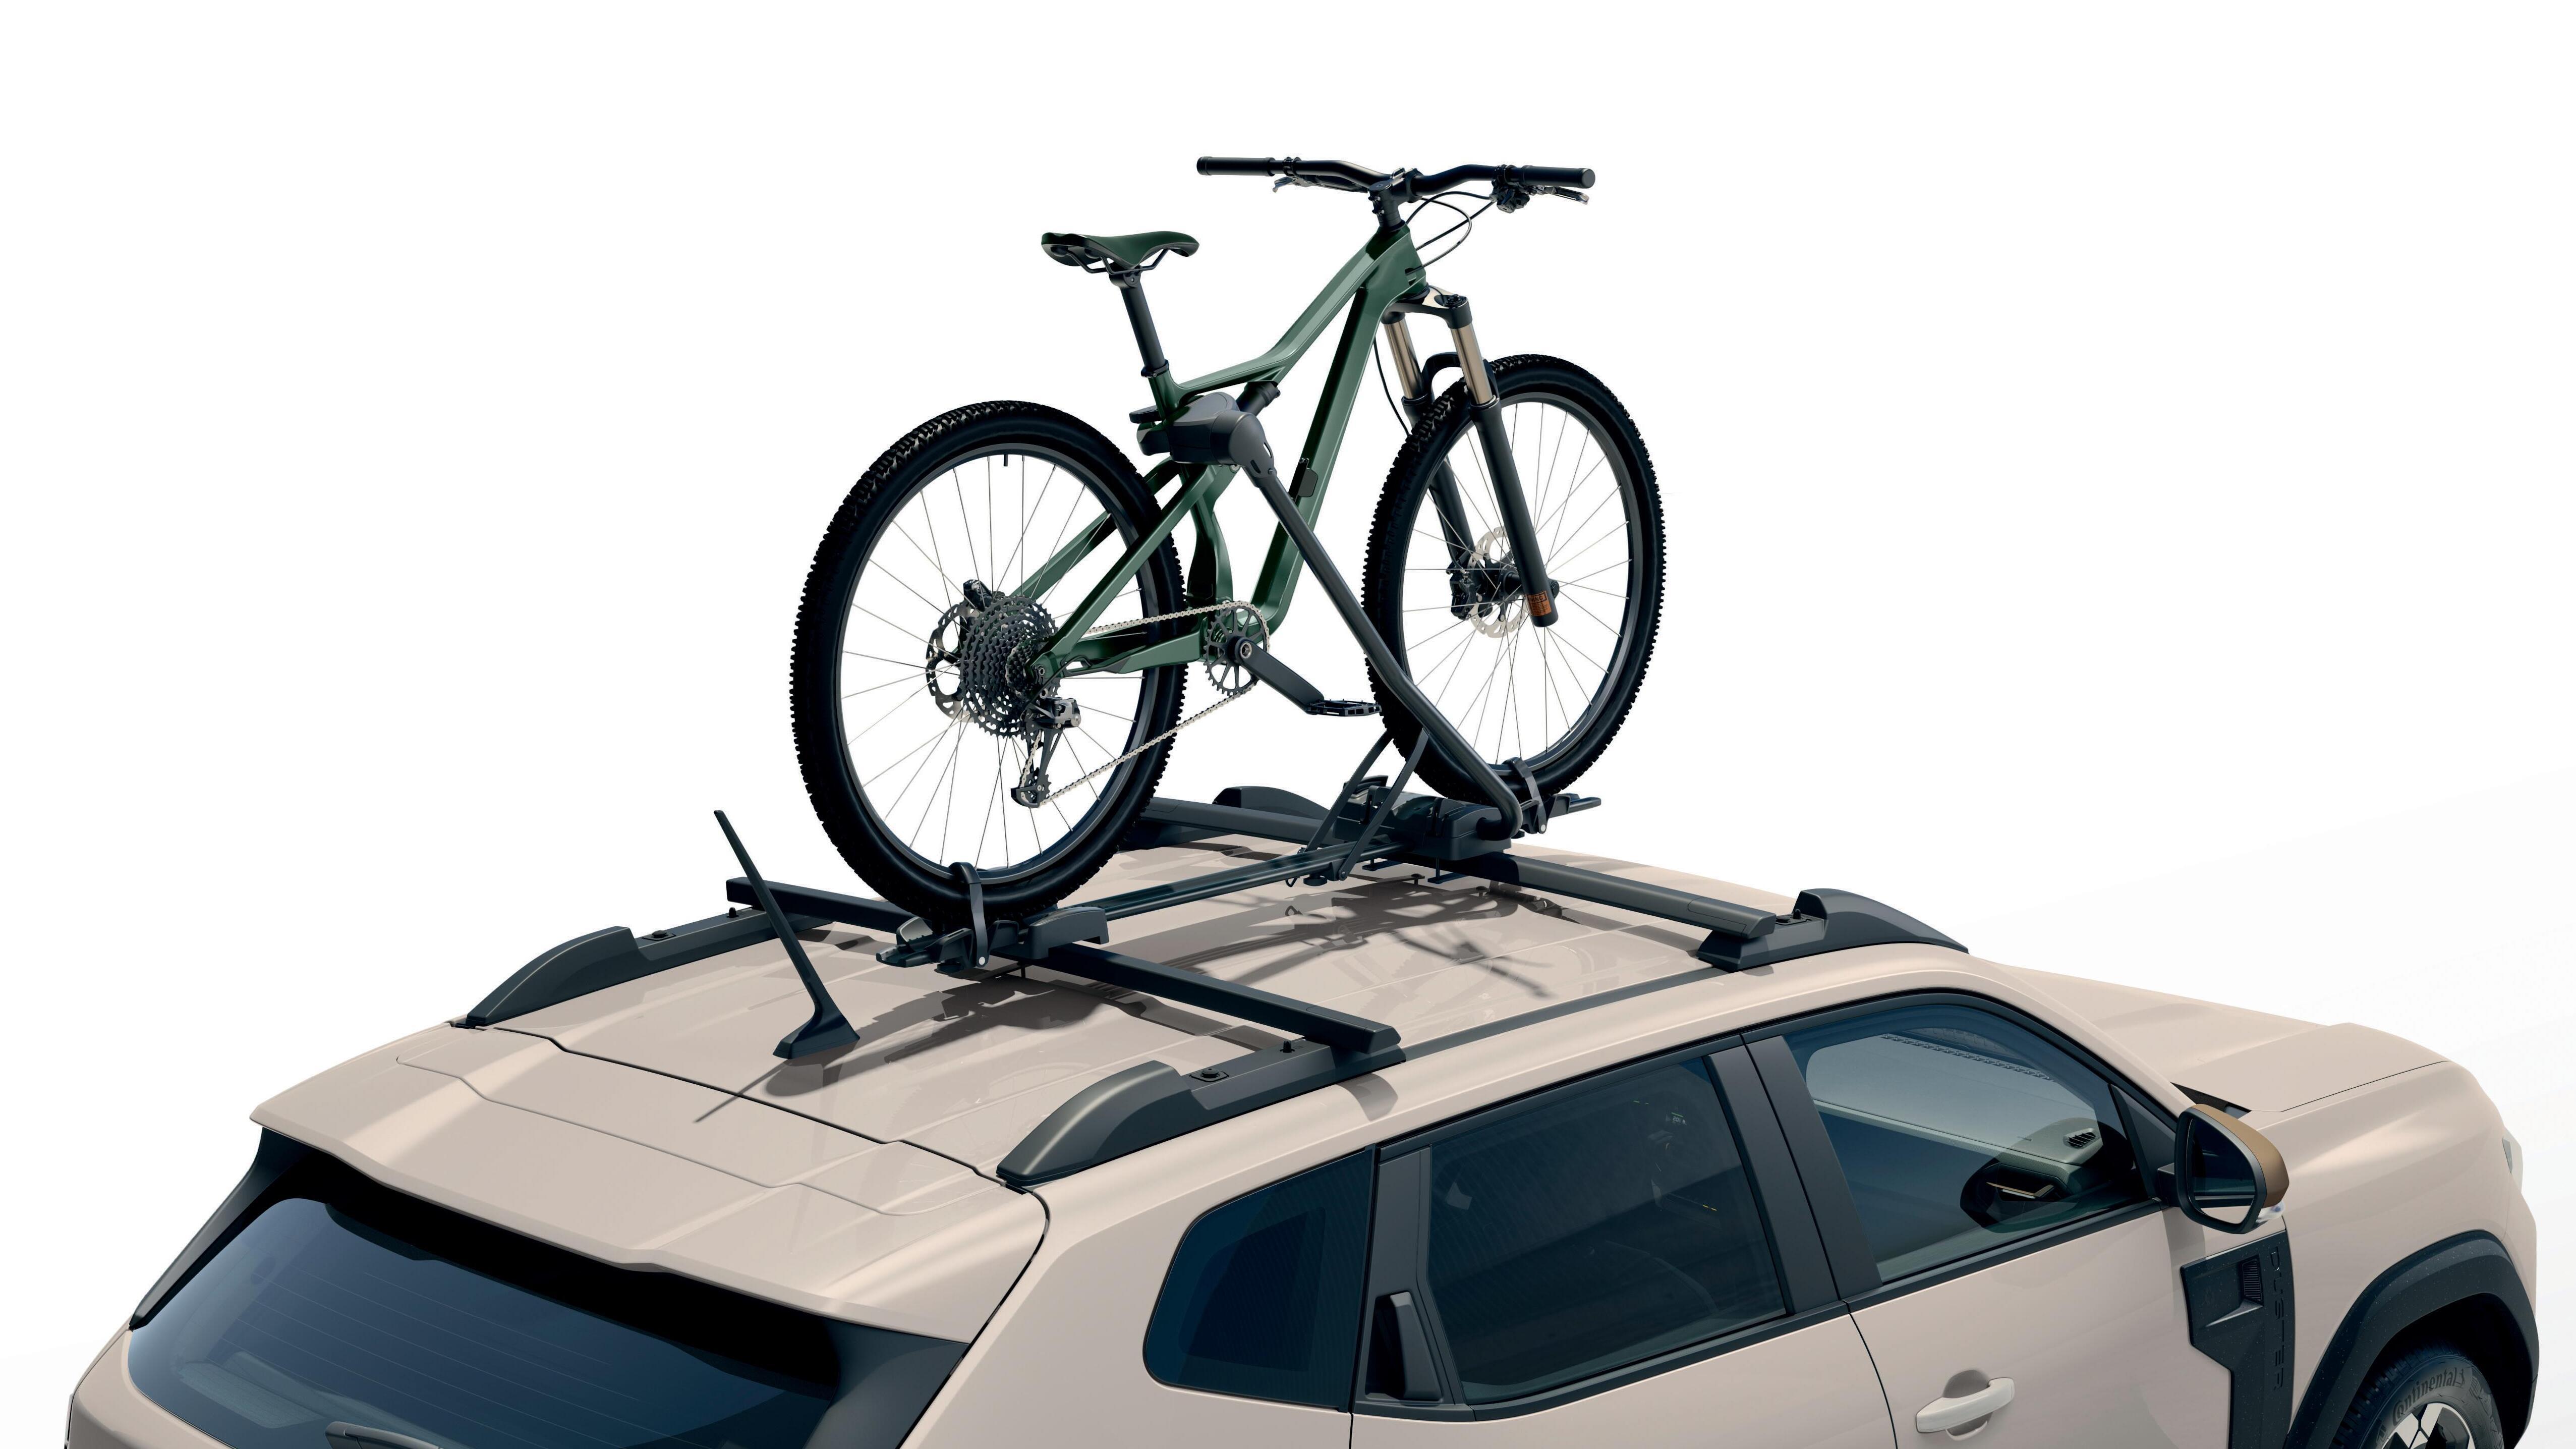 Porta-bicicletas nas barras de tejadilho